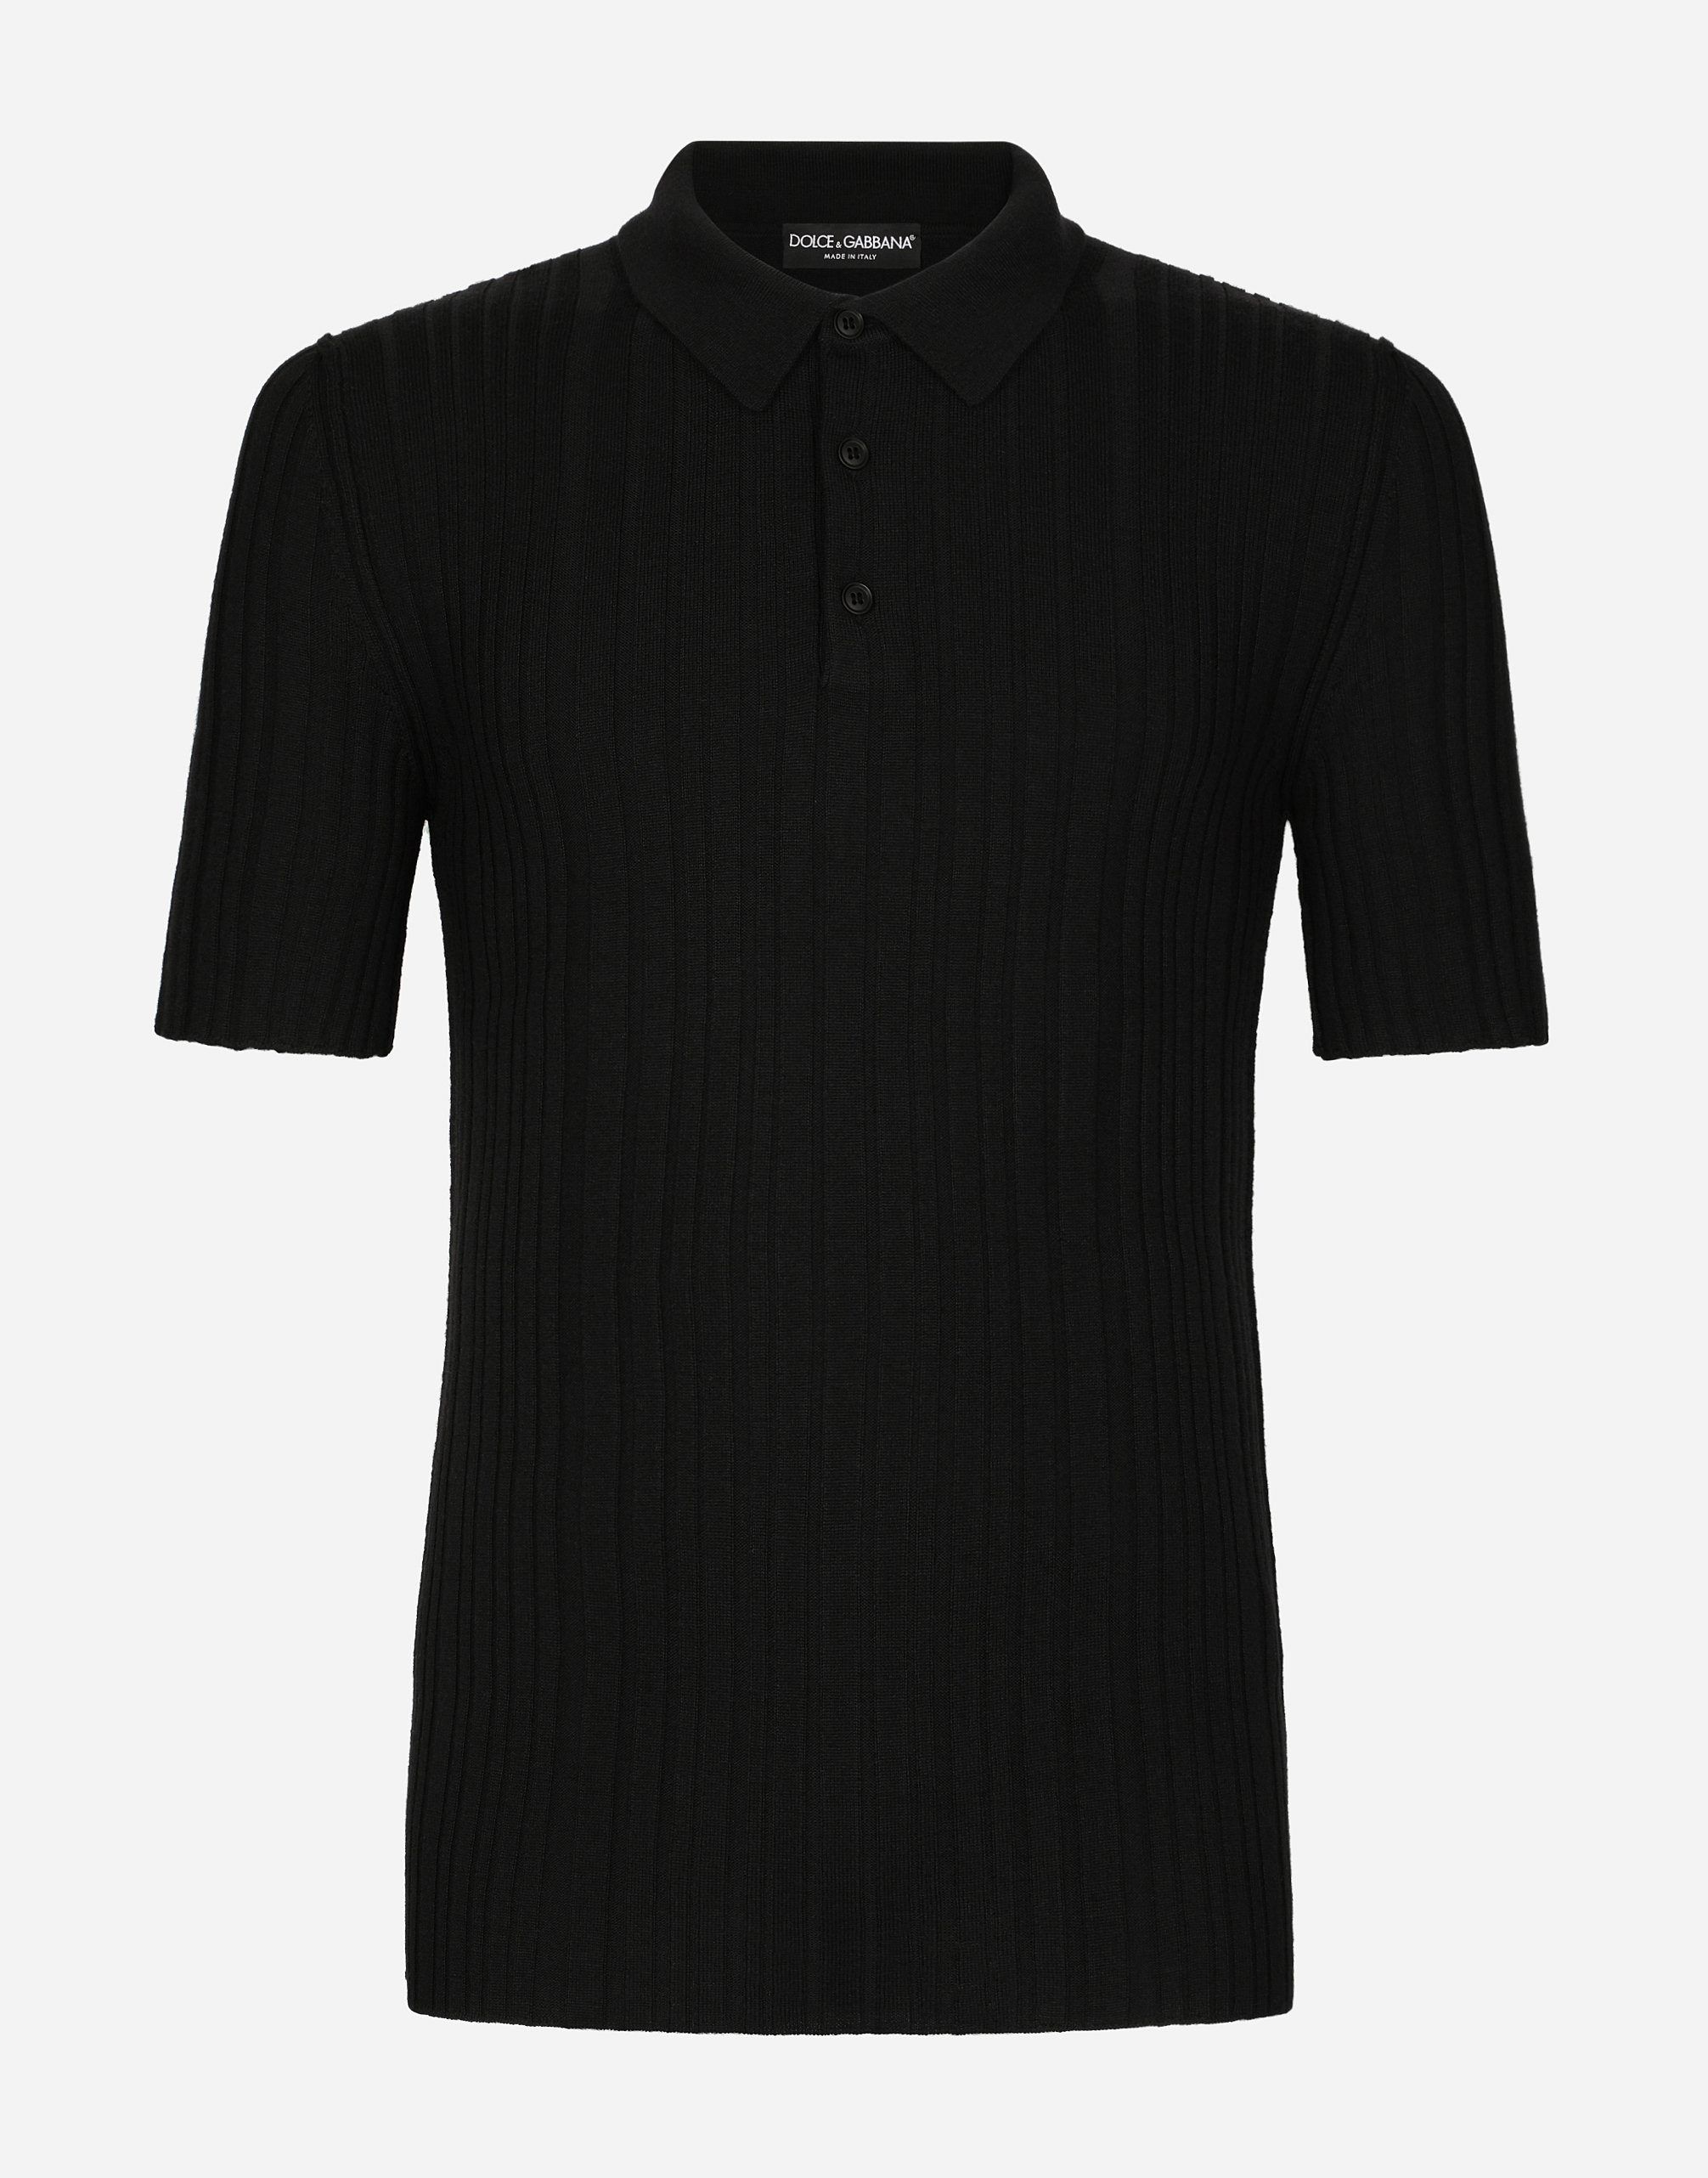 Wool knit polo shirt in Black | Dolce&Gabbana®